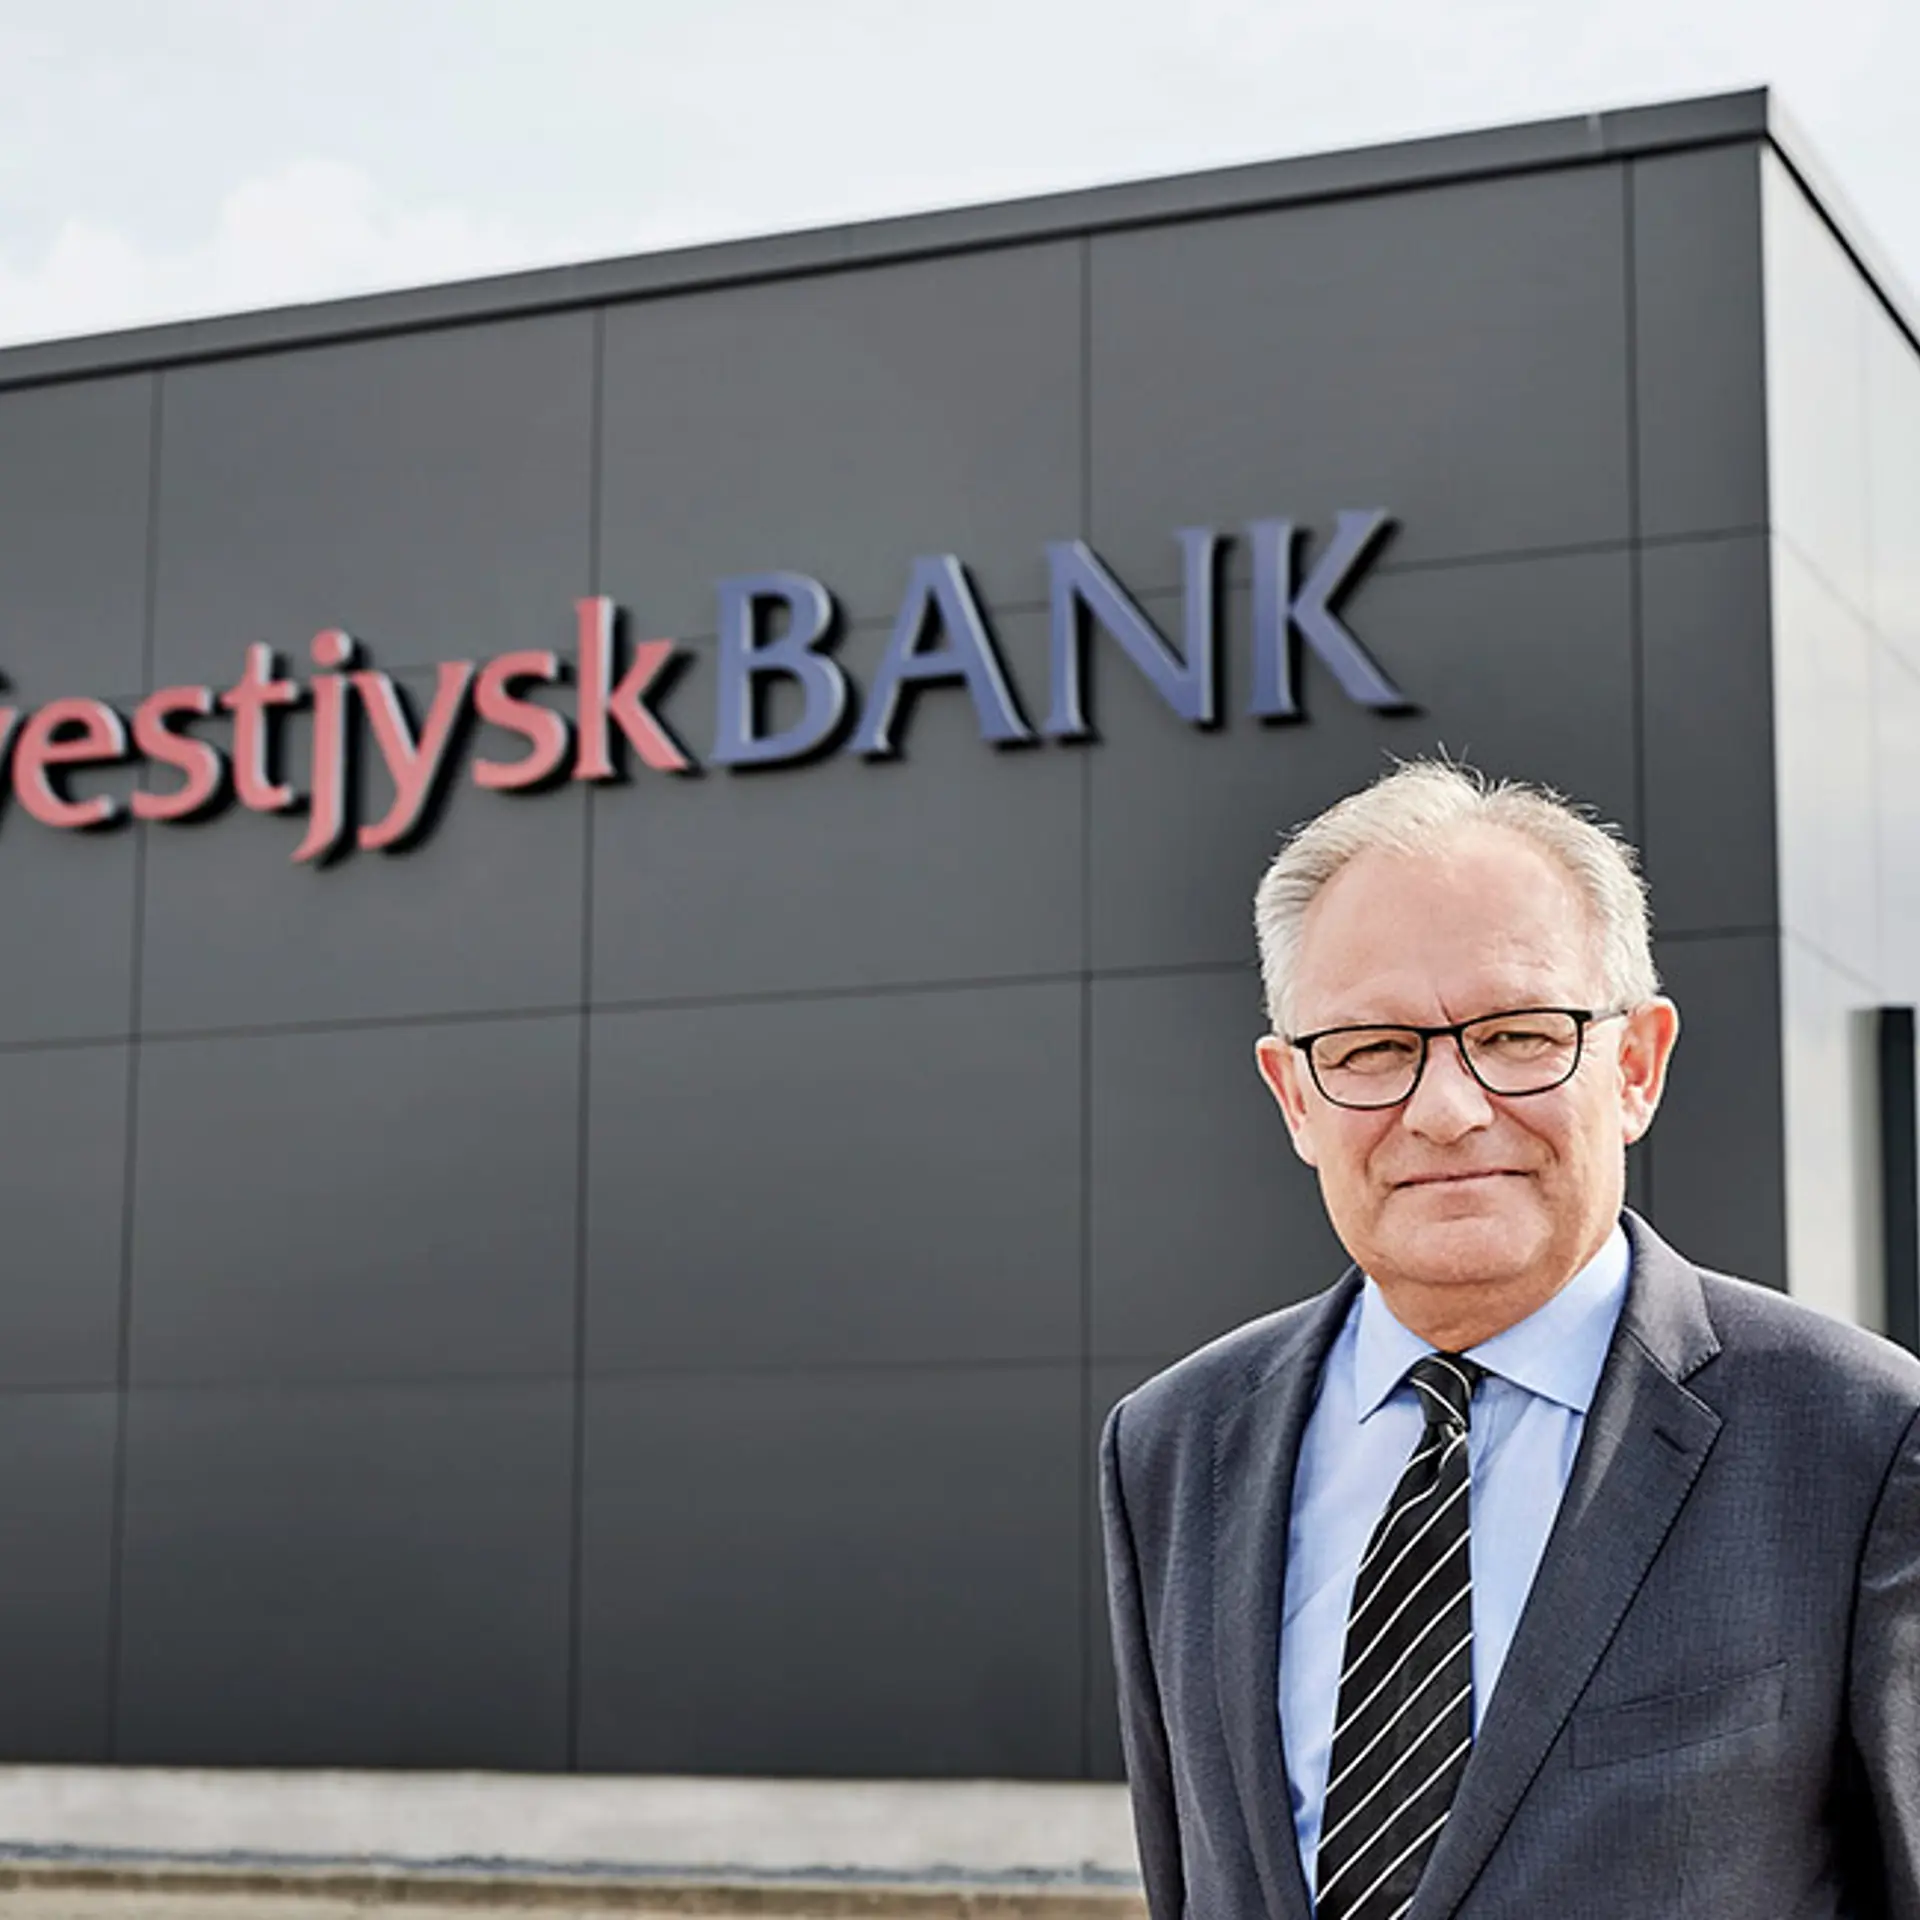 Adm bankdirektør Jan Ulsø Madsen står udenfor Vestjysk banks hovedsæde